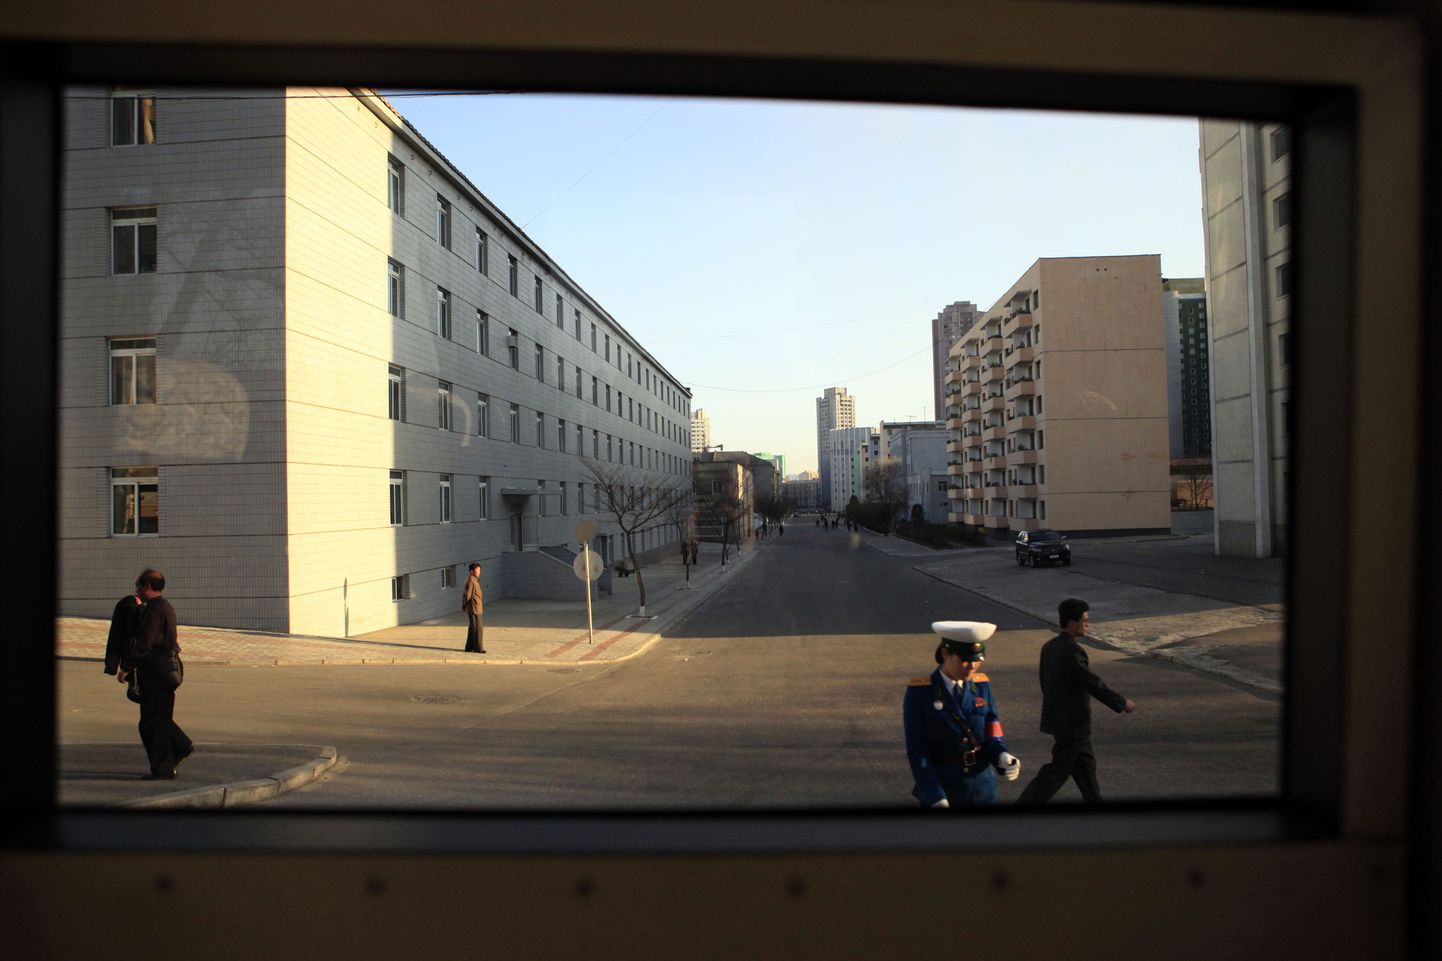 Põhjakorealased Pyongyangi tänavatel, kuhu välismaalasi tavaliselt ei lasta. Pilt on tehtud läbi bussiakna.